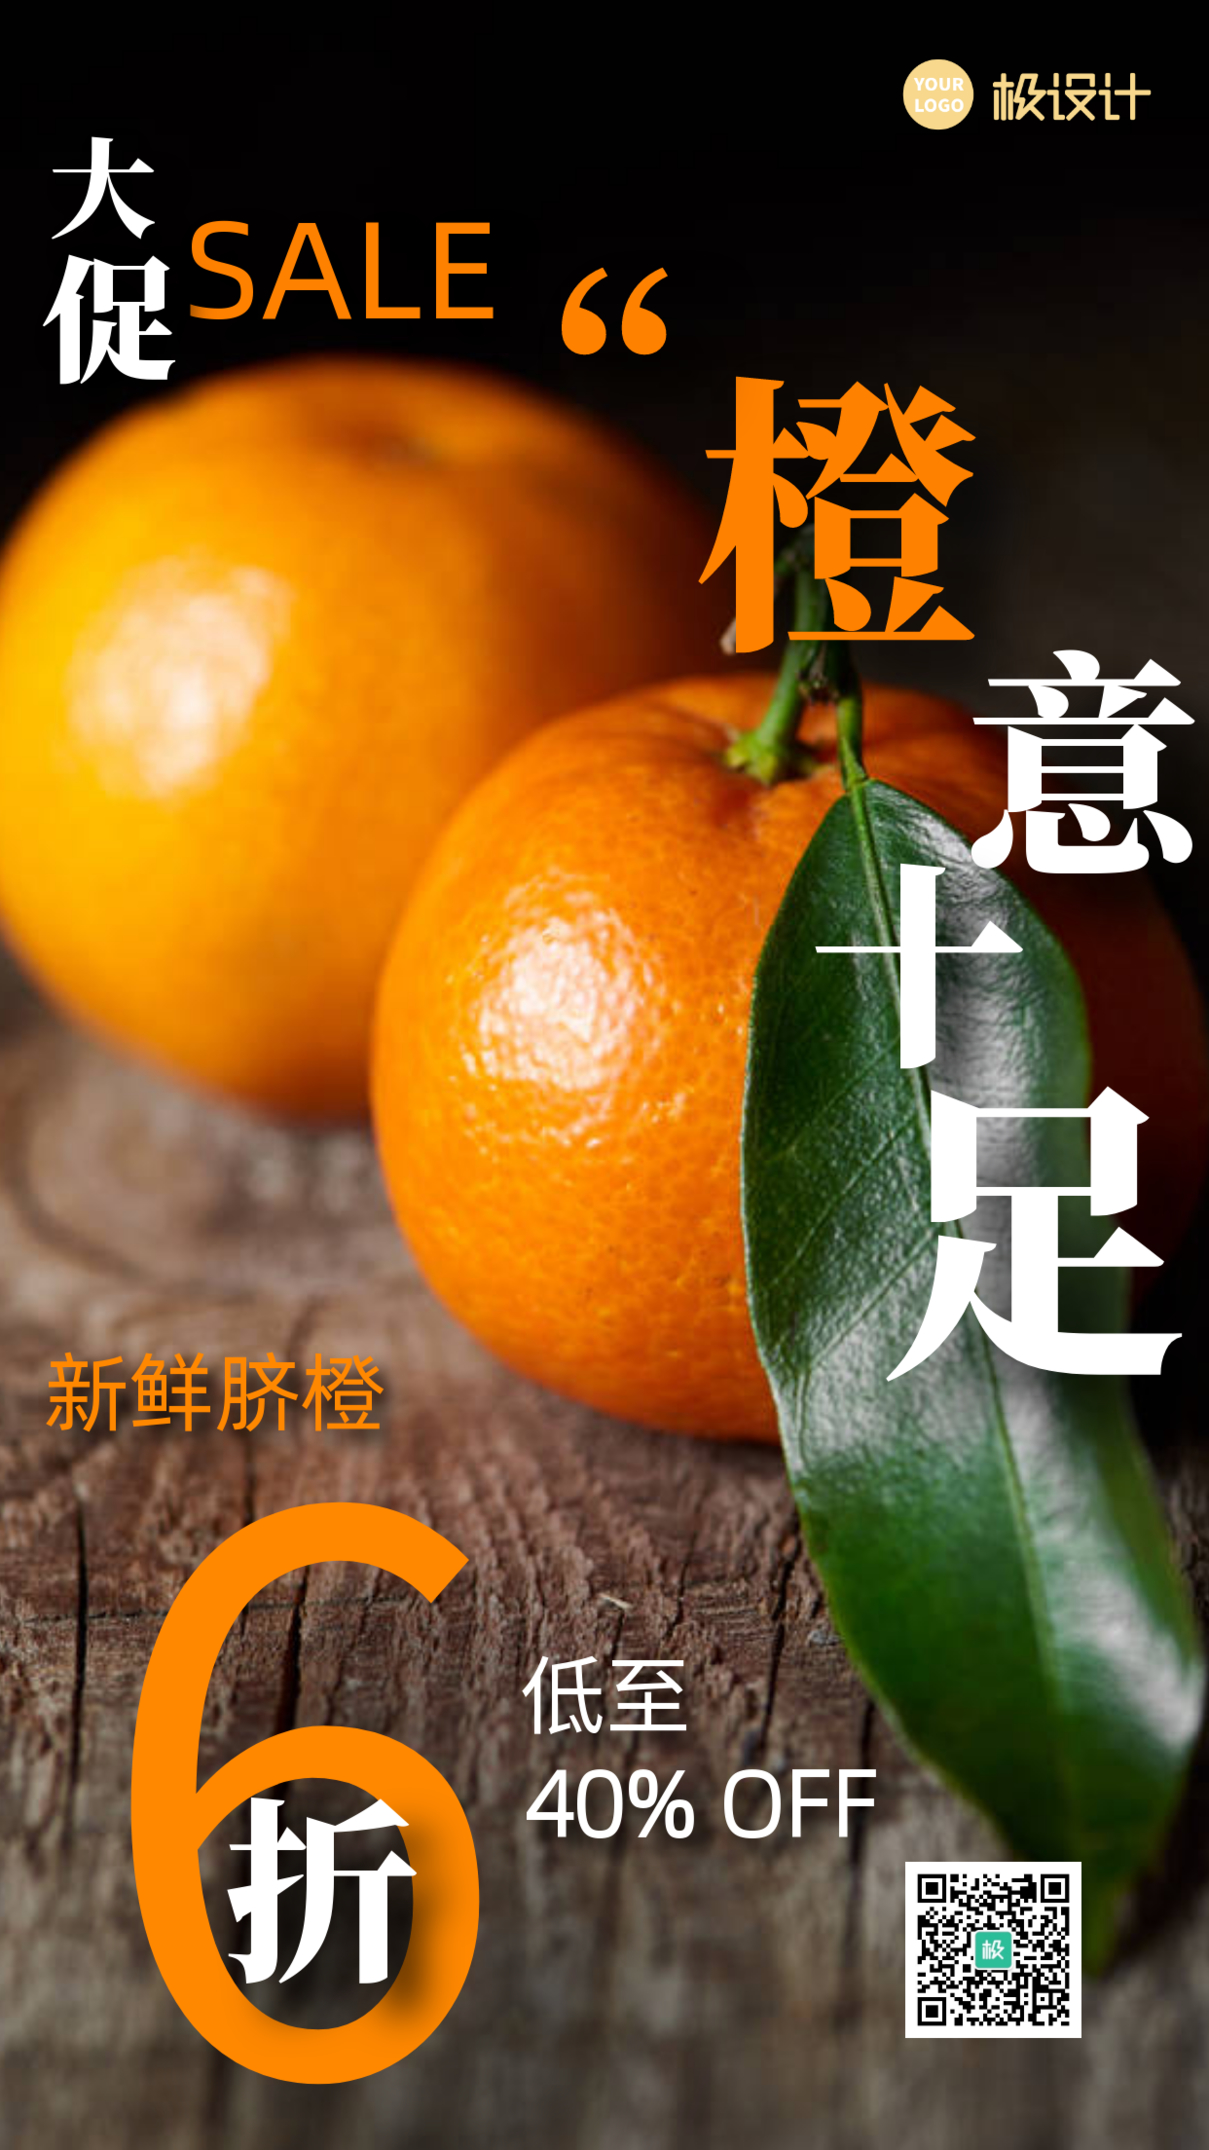 新鲜橙子脐橙打折促销摄影图手机海报